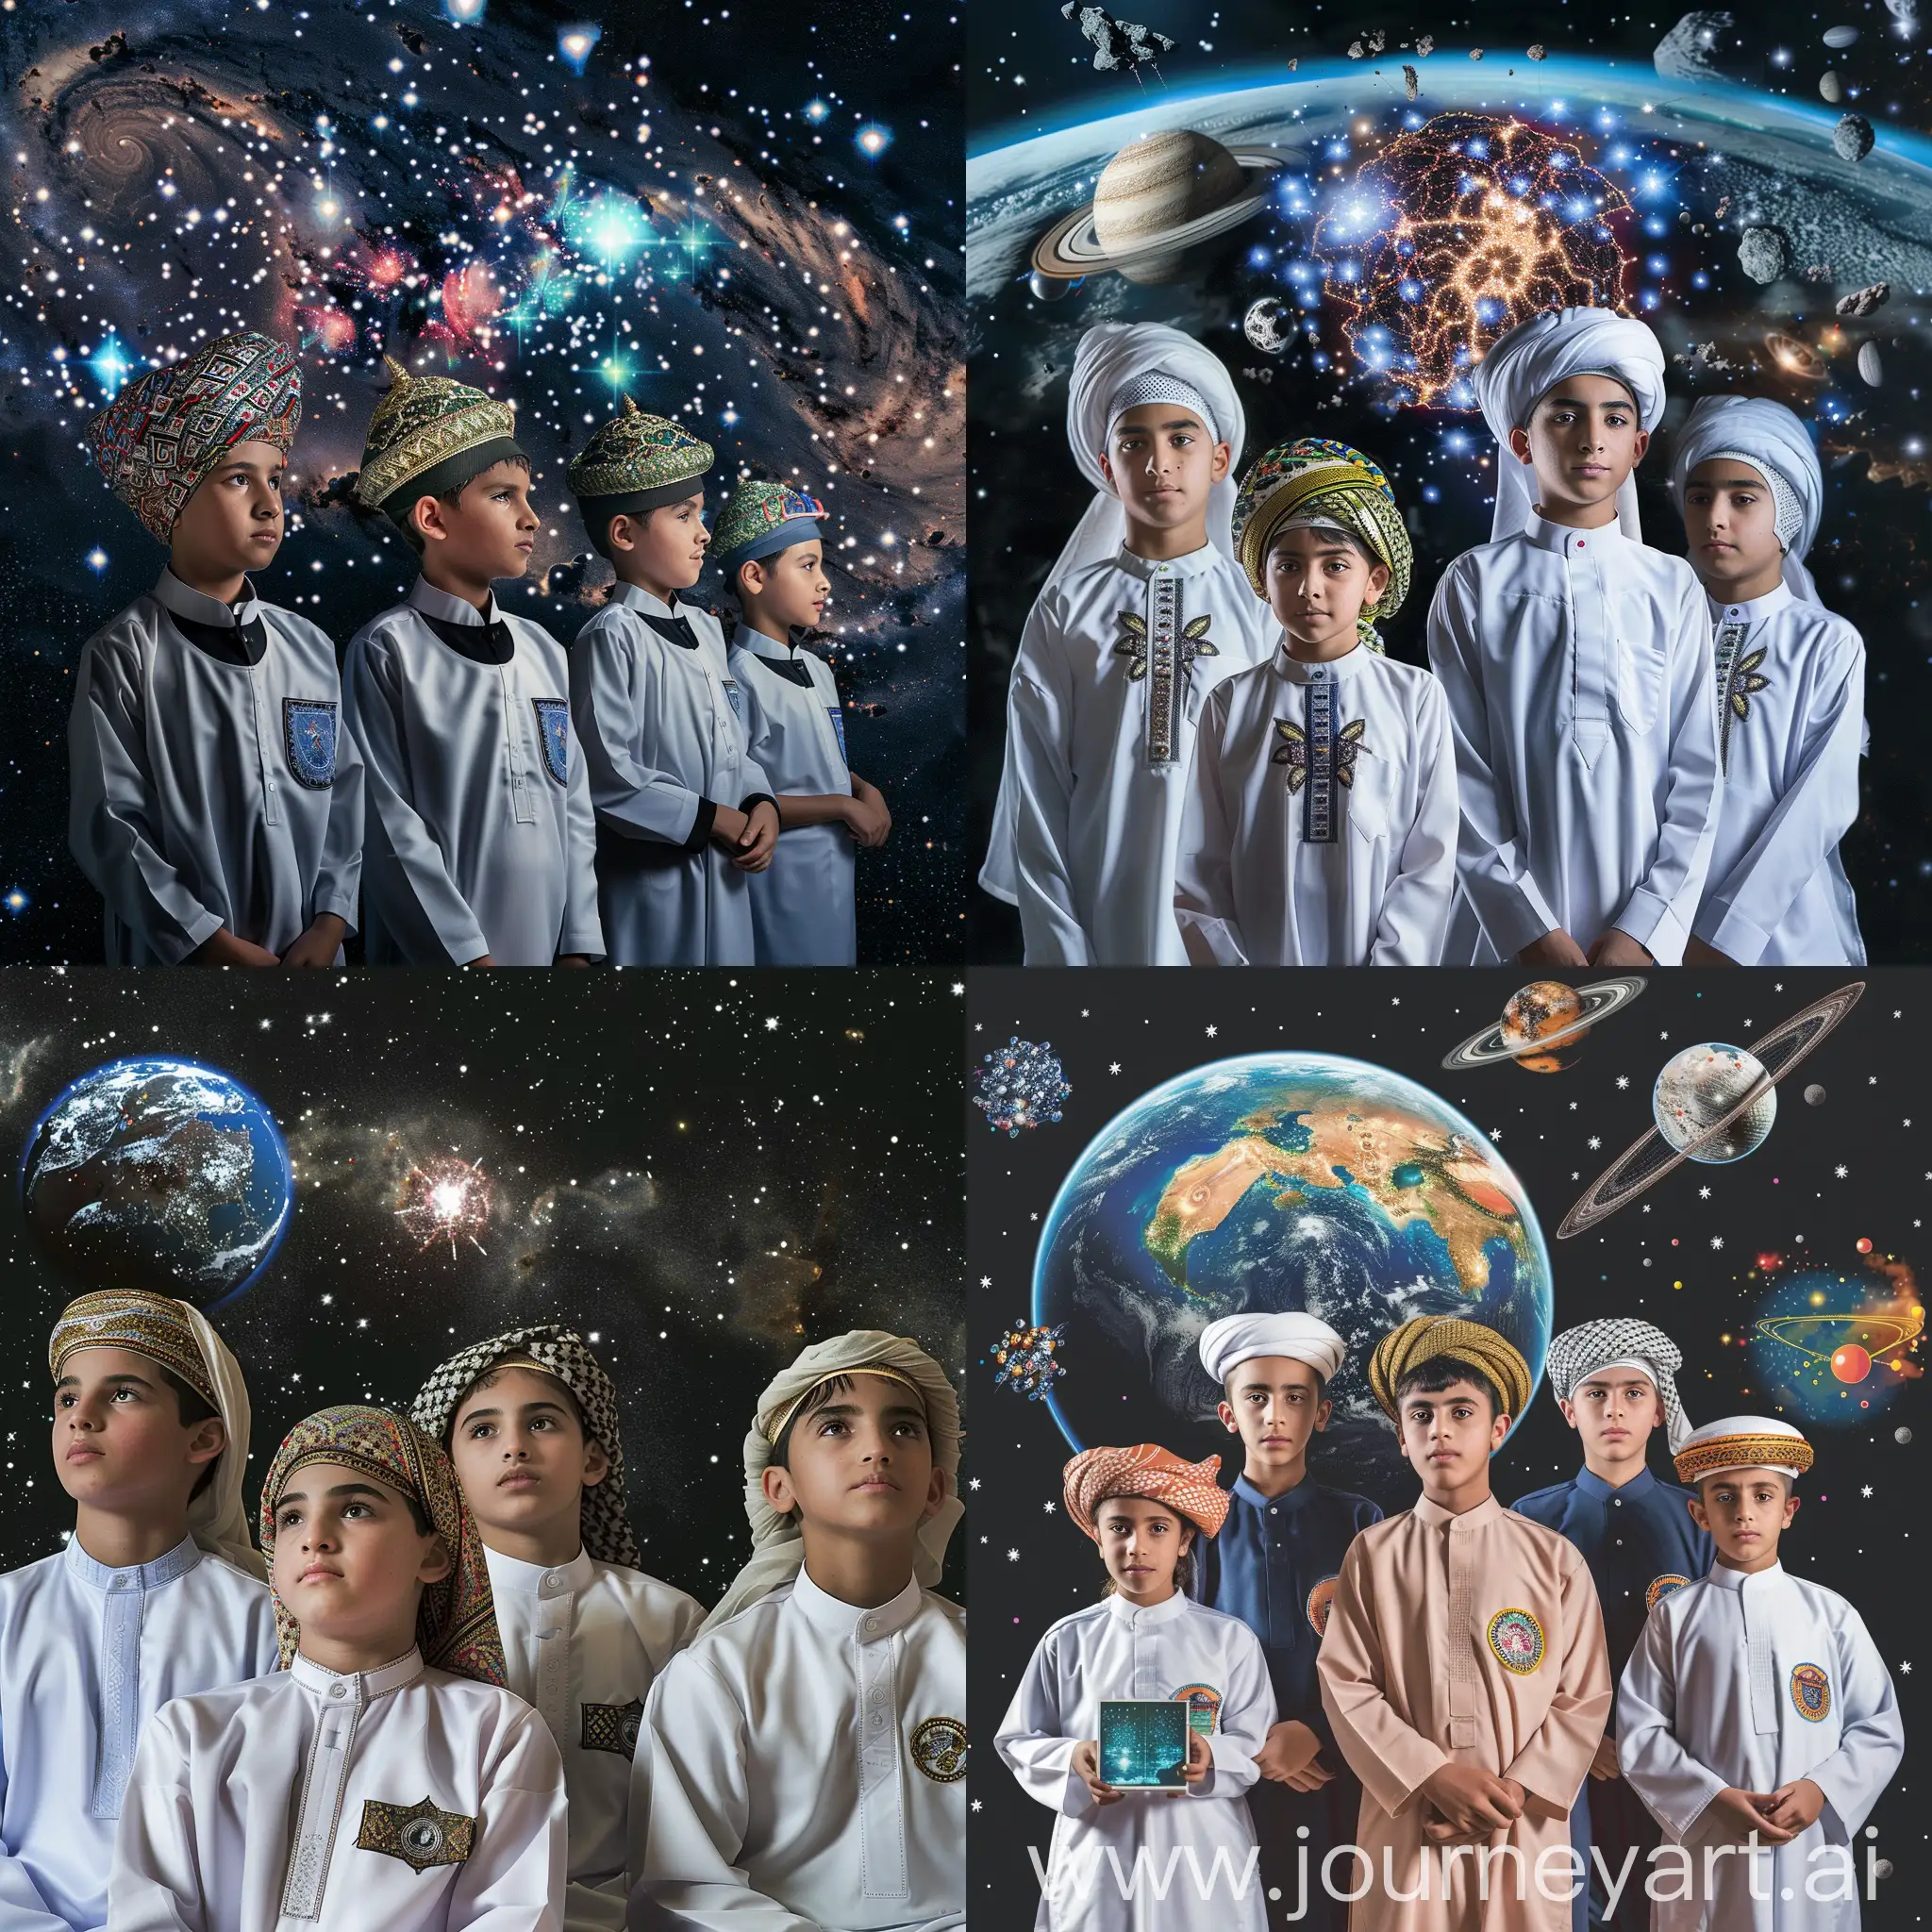 ثلاثة اولاد عمانين يرتدون الدشداشة العمانية ، و اربعة بنات يرتدون الزي المدرسي الخاص بسلطنة عمان بسلطنة عمان للمرحلة الثانوية، يعرضون ابتكاراتهم والتكنلوجيا الخاصة يهم ، في الفضاء